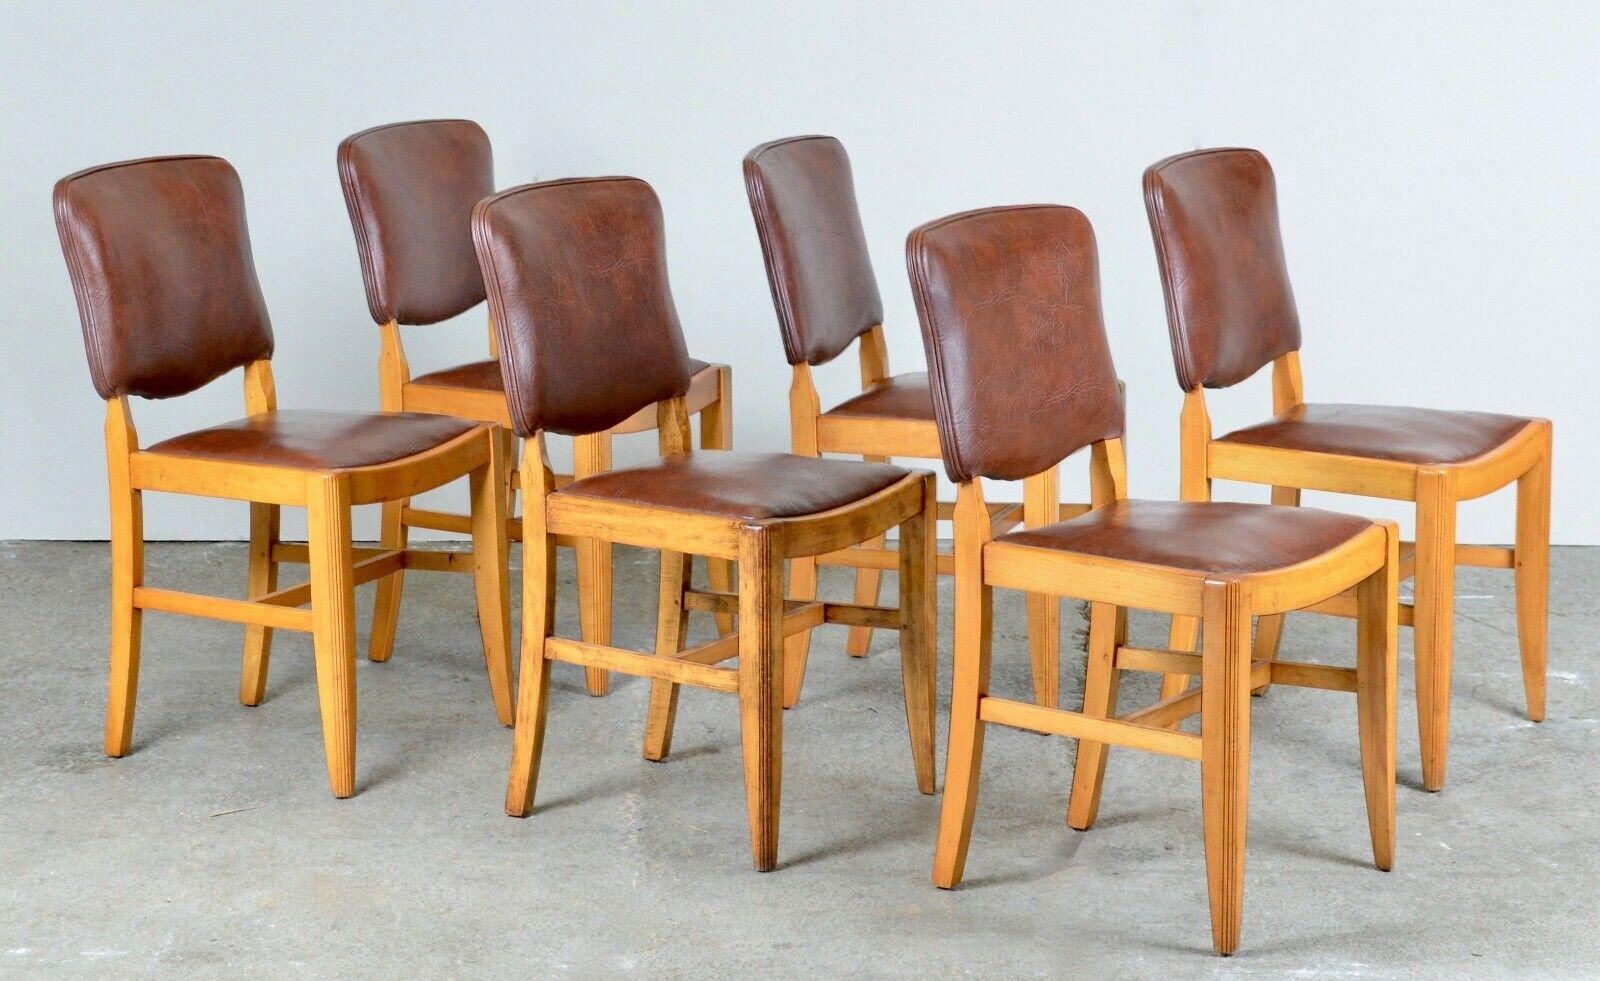 Nous sommes ravis d'offrir à la vente cette suite vintage de six chaises de salle à manger en cuir brun et noyer. Ces chaises sont en très bon état, les dossiers et les sièges sont confortables et constituent un ensemble attrayant pour toute salle à